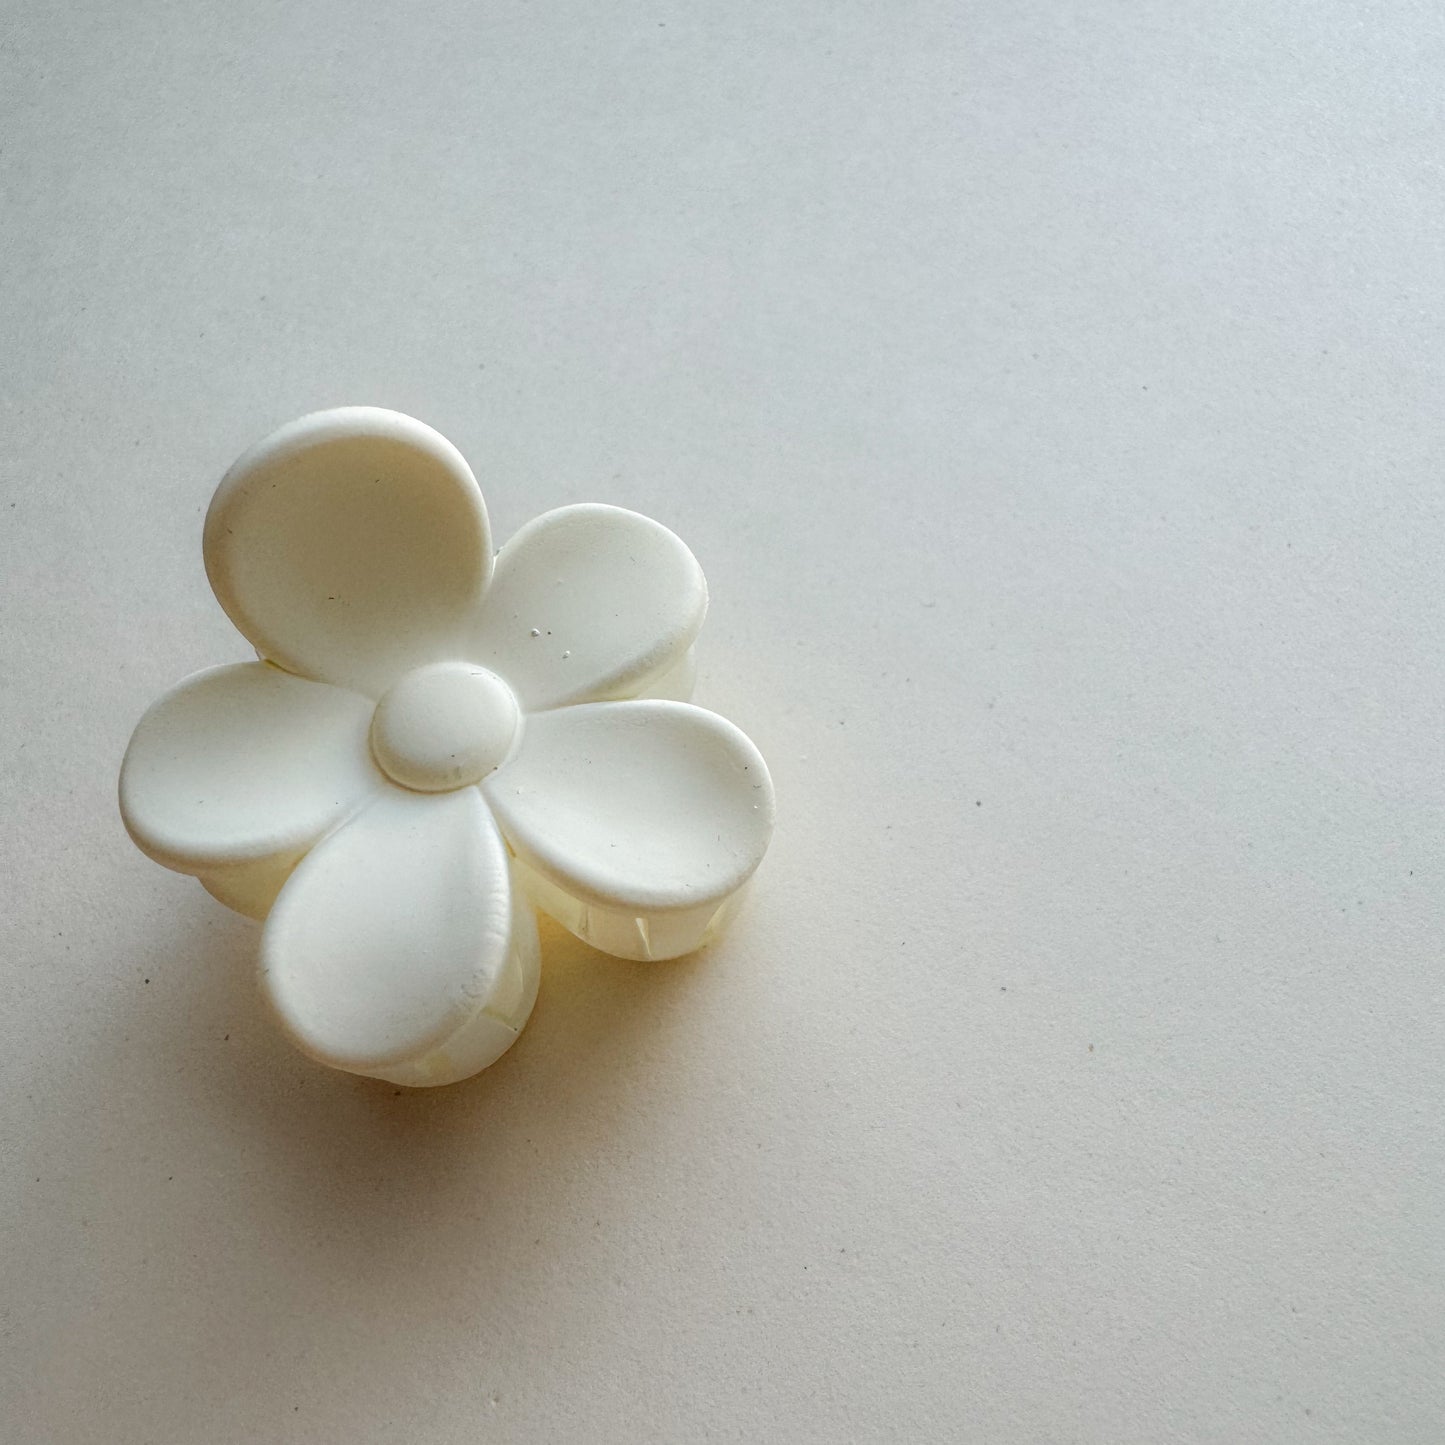 Sweet daisy hiusklipsu (3 cm)